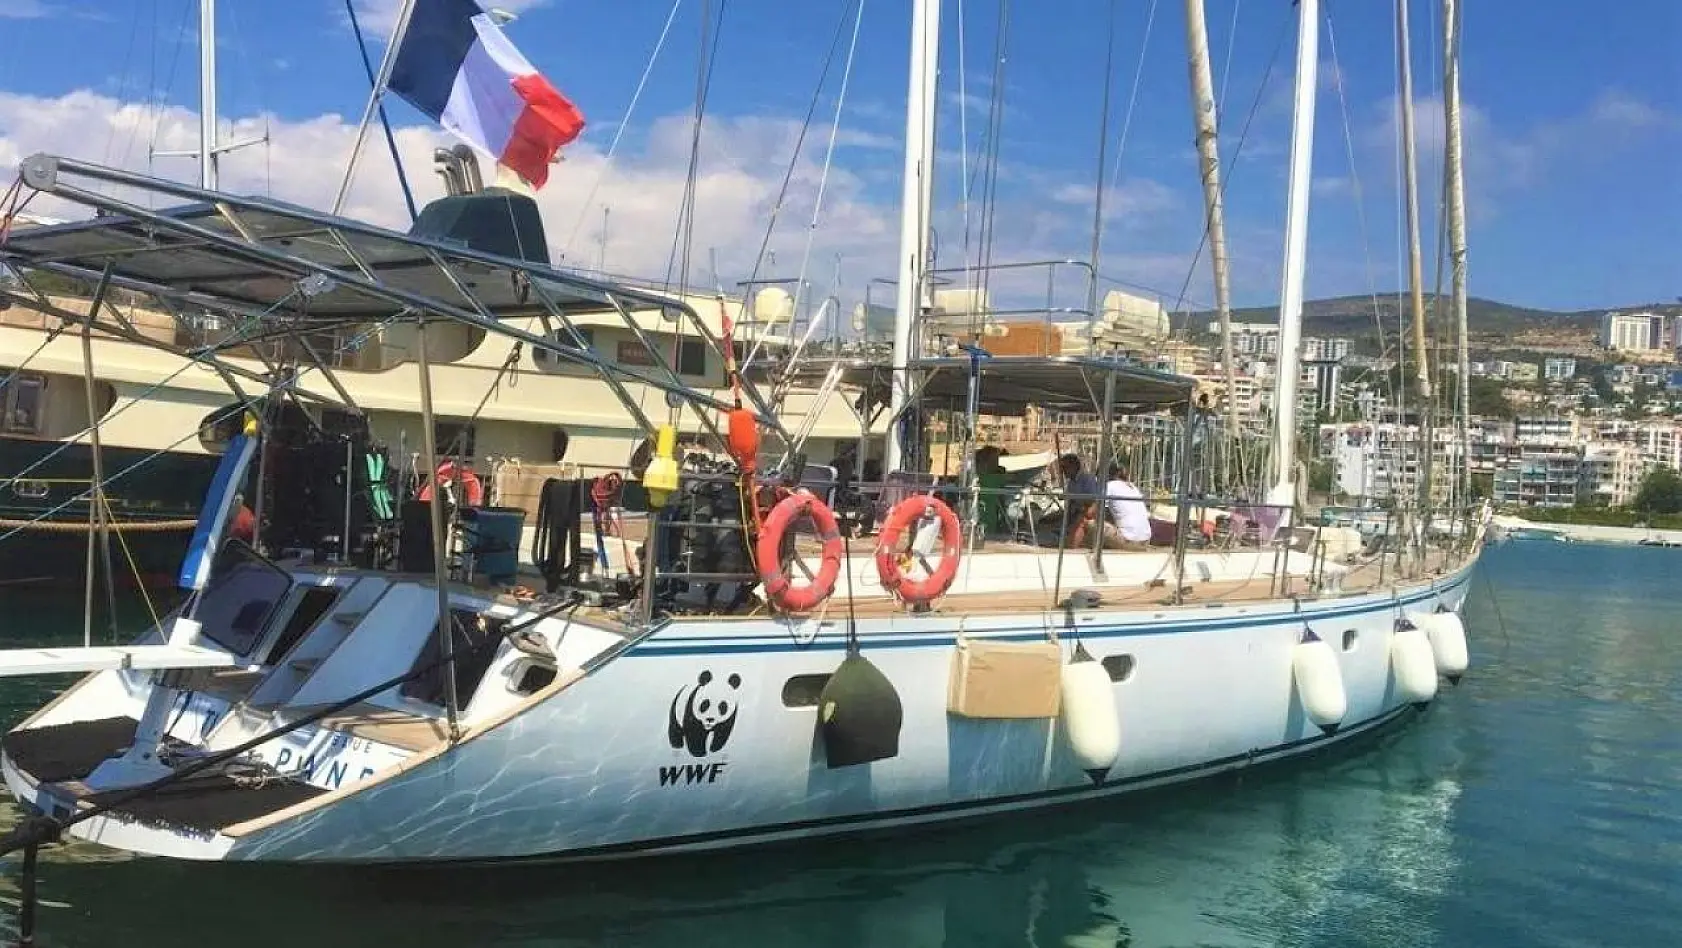 Blue Panda teknesi İtalya'dan sonra Kuşadası'nda